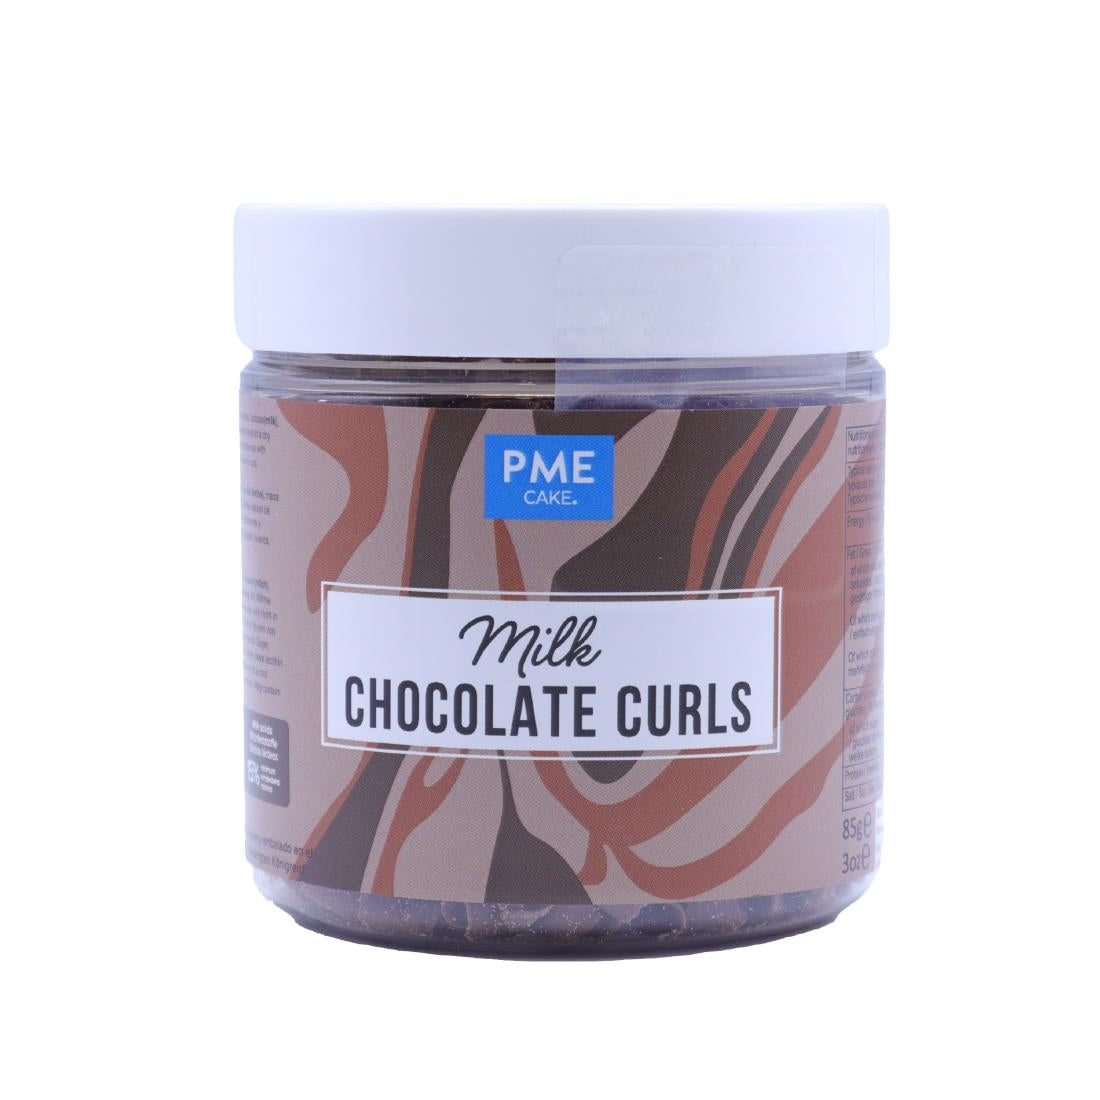 HU282 PME Chocolate Curls Milk Chocolate 85g